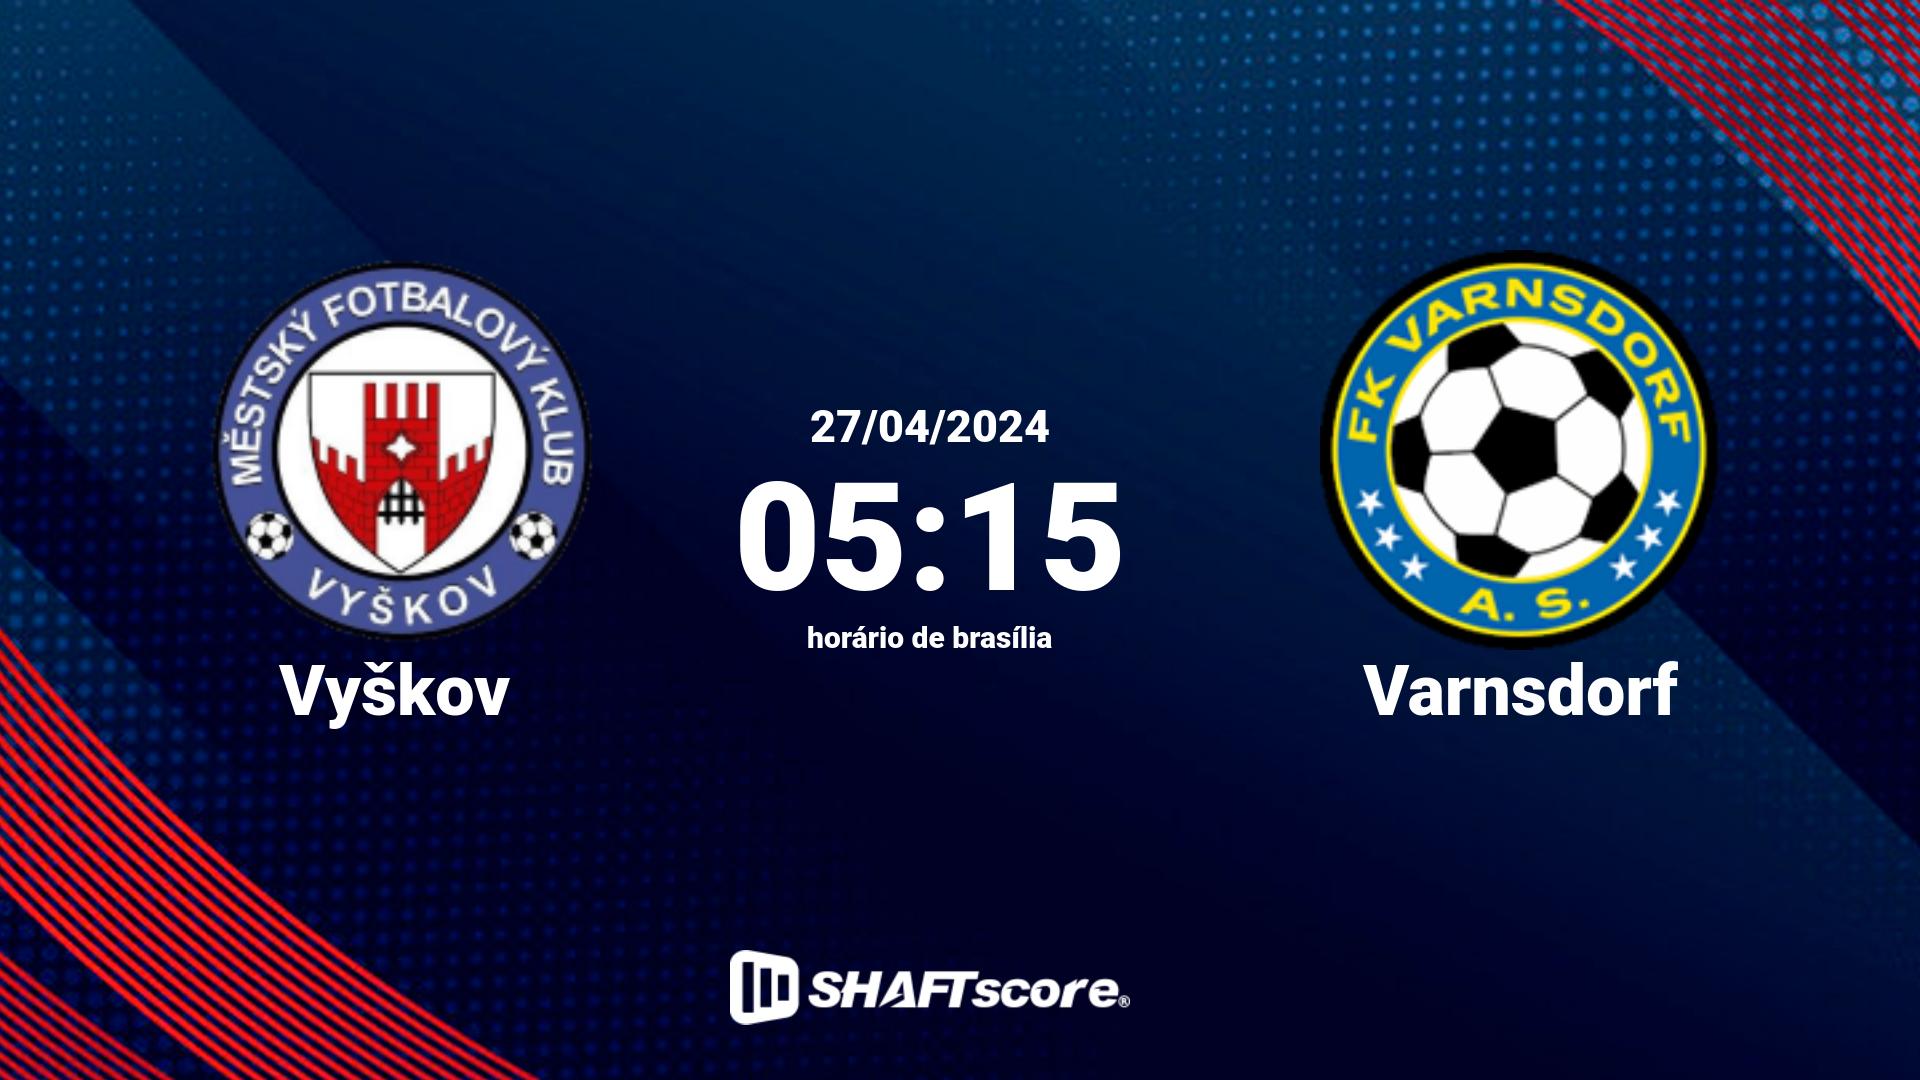 Estatísticas do jogo Vyškov vs Varnsdorf 27.04 05:15